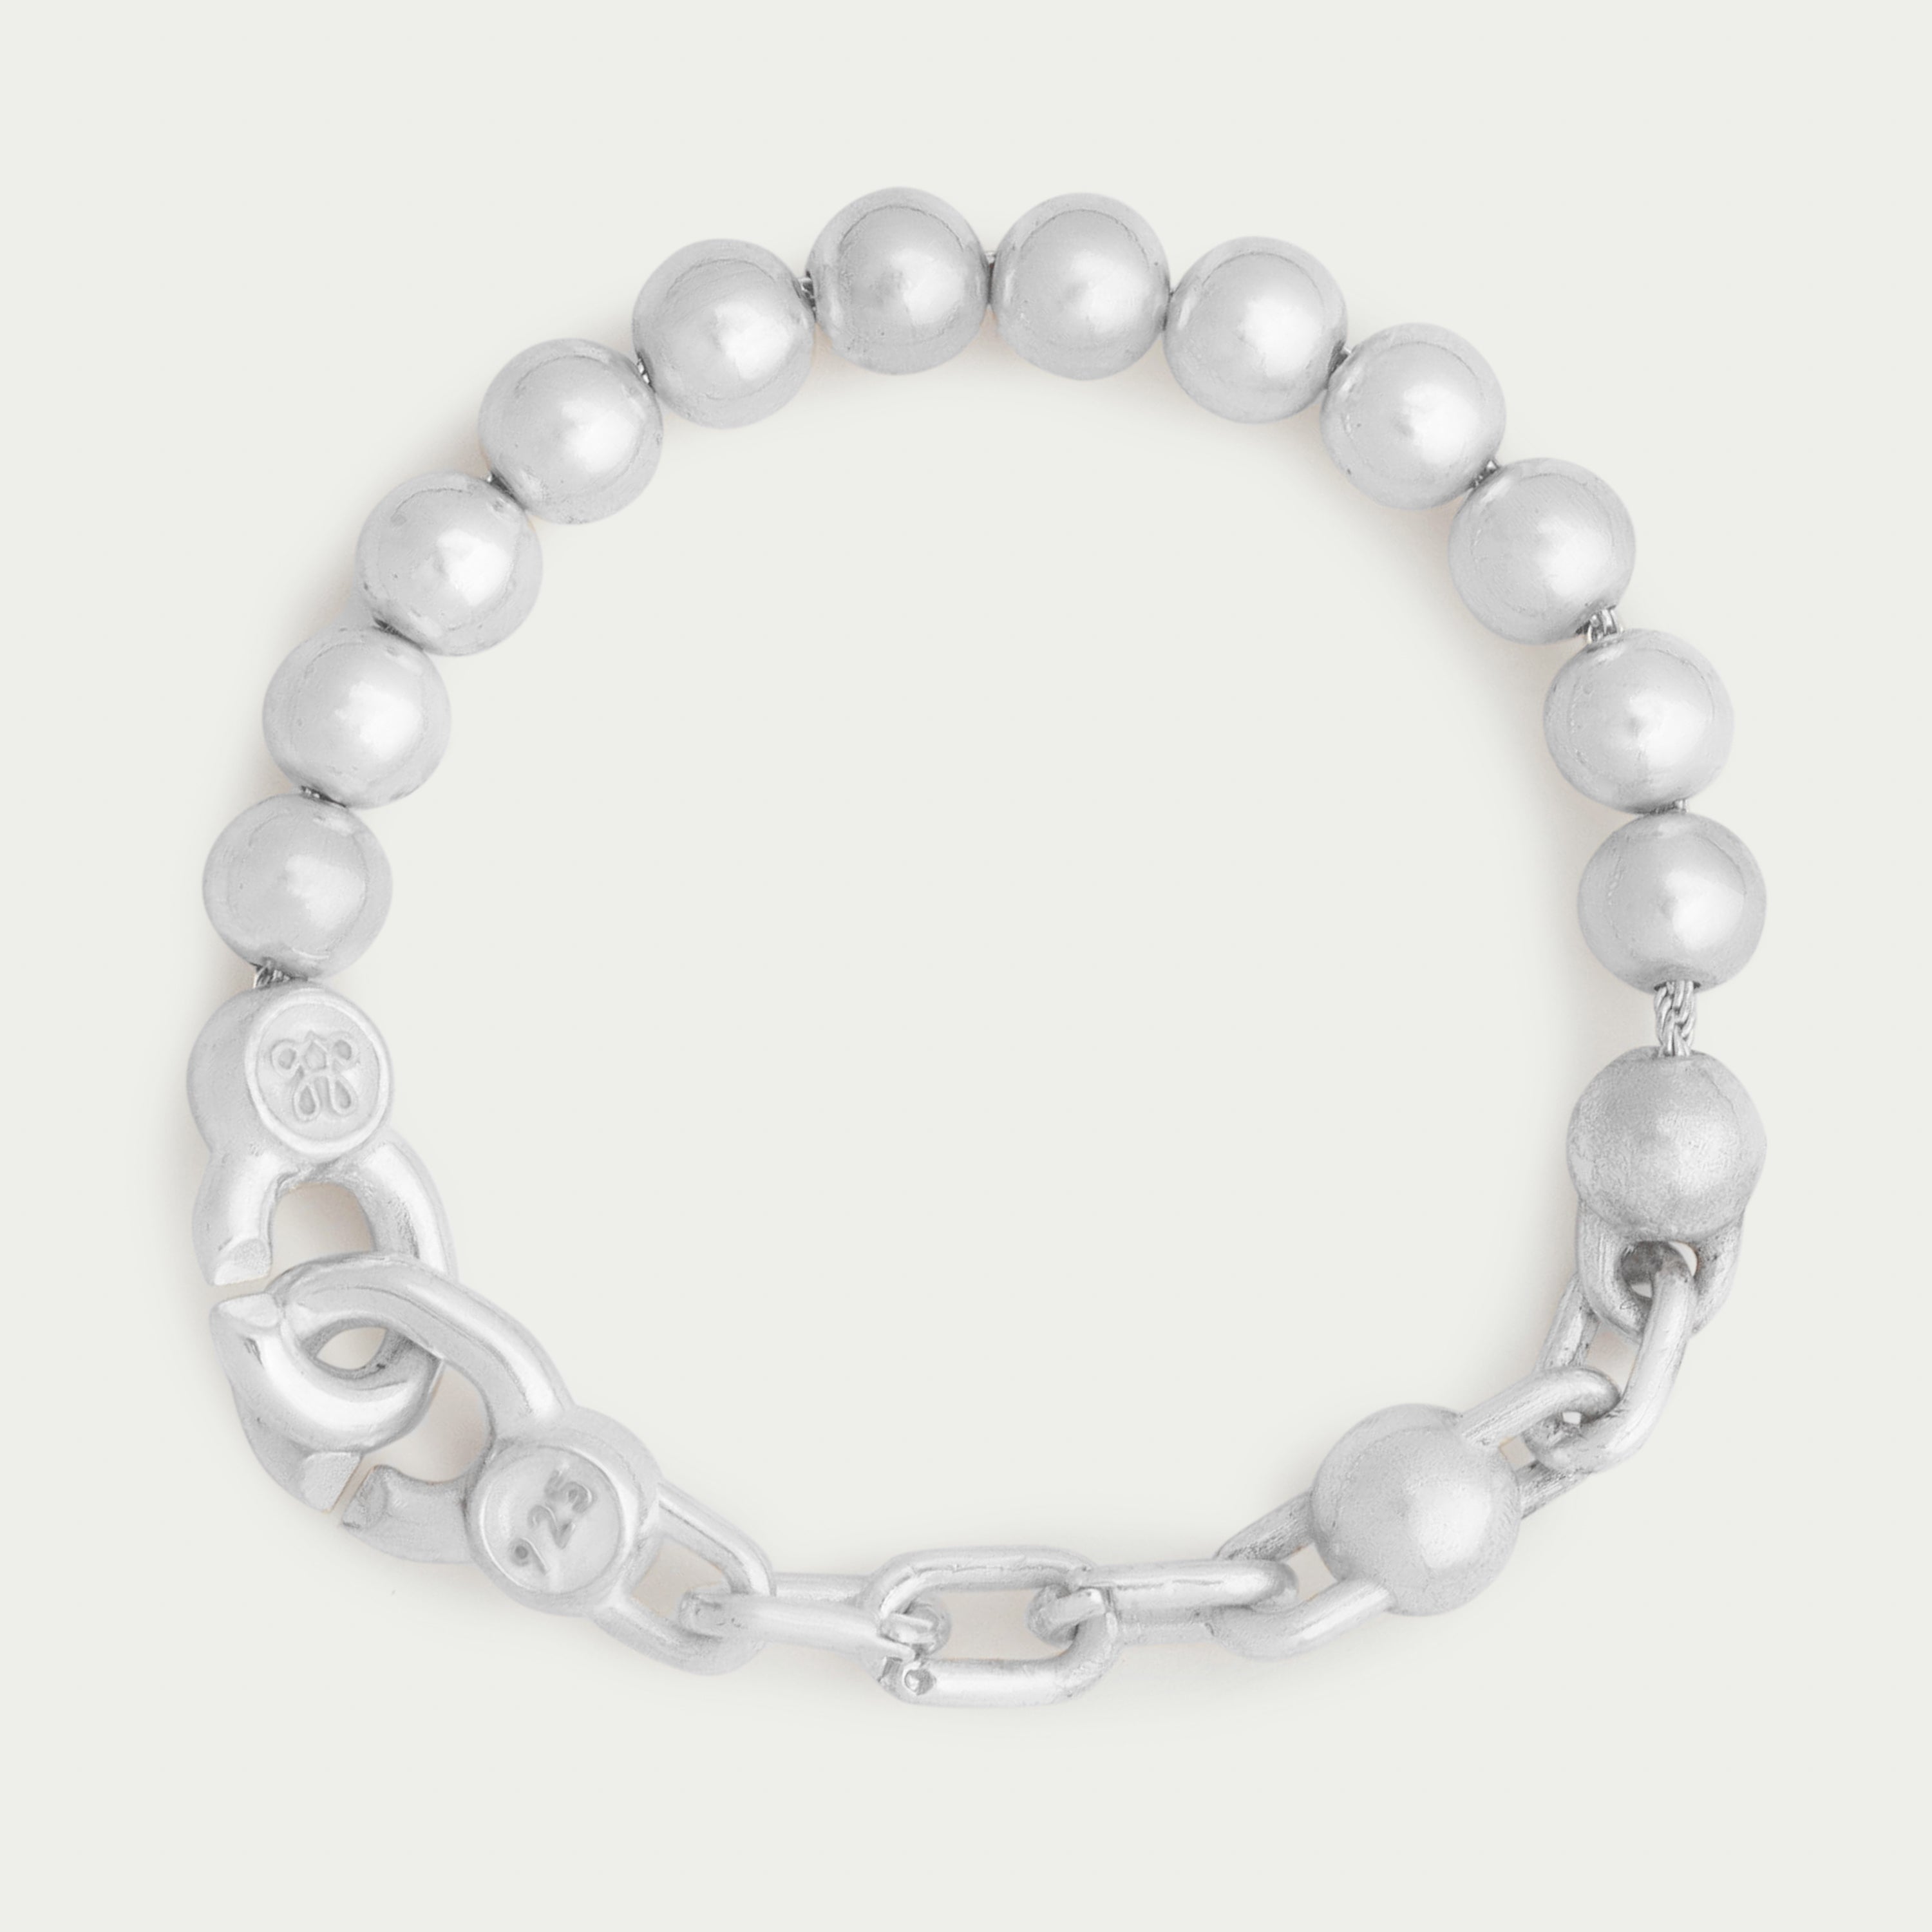 経典ブランド OH.glass bracelet silver925 ブレスレット - www